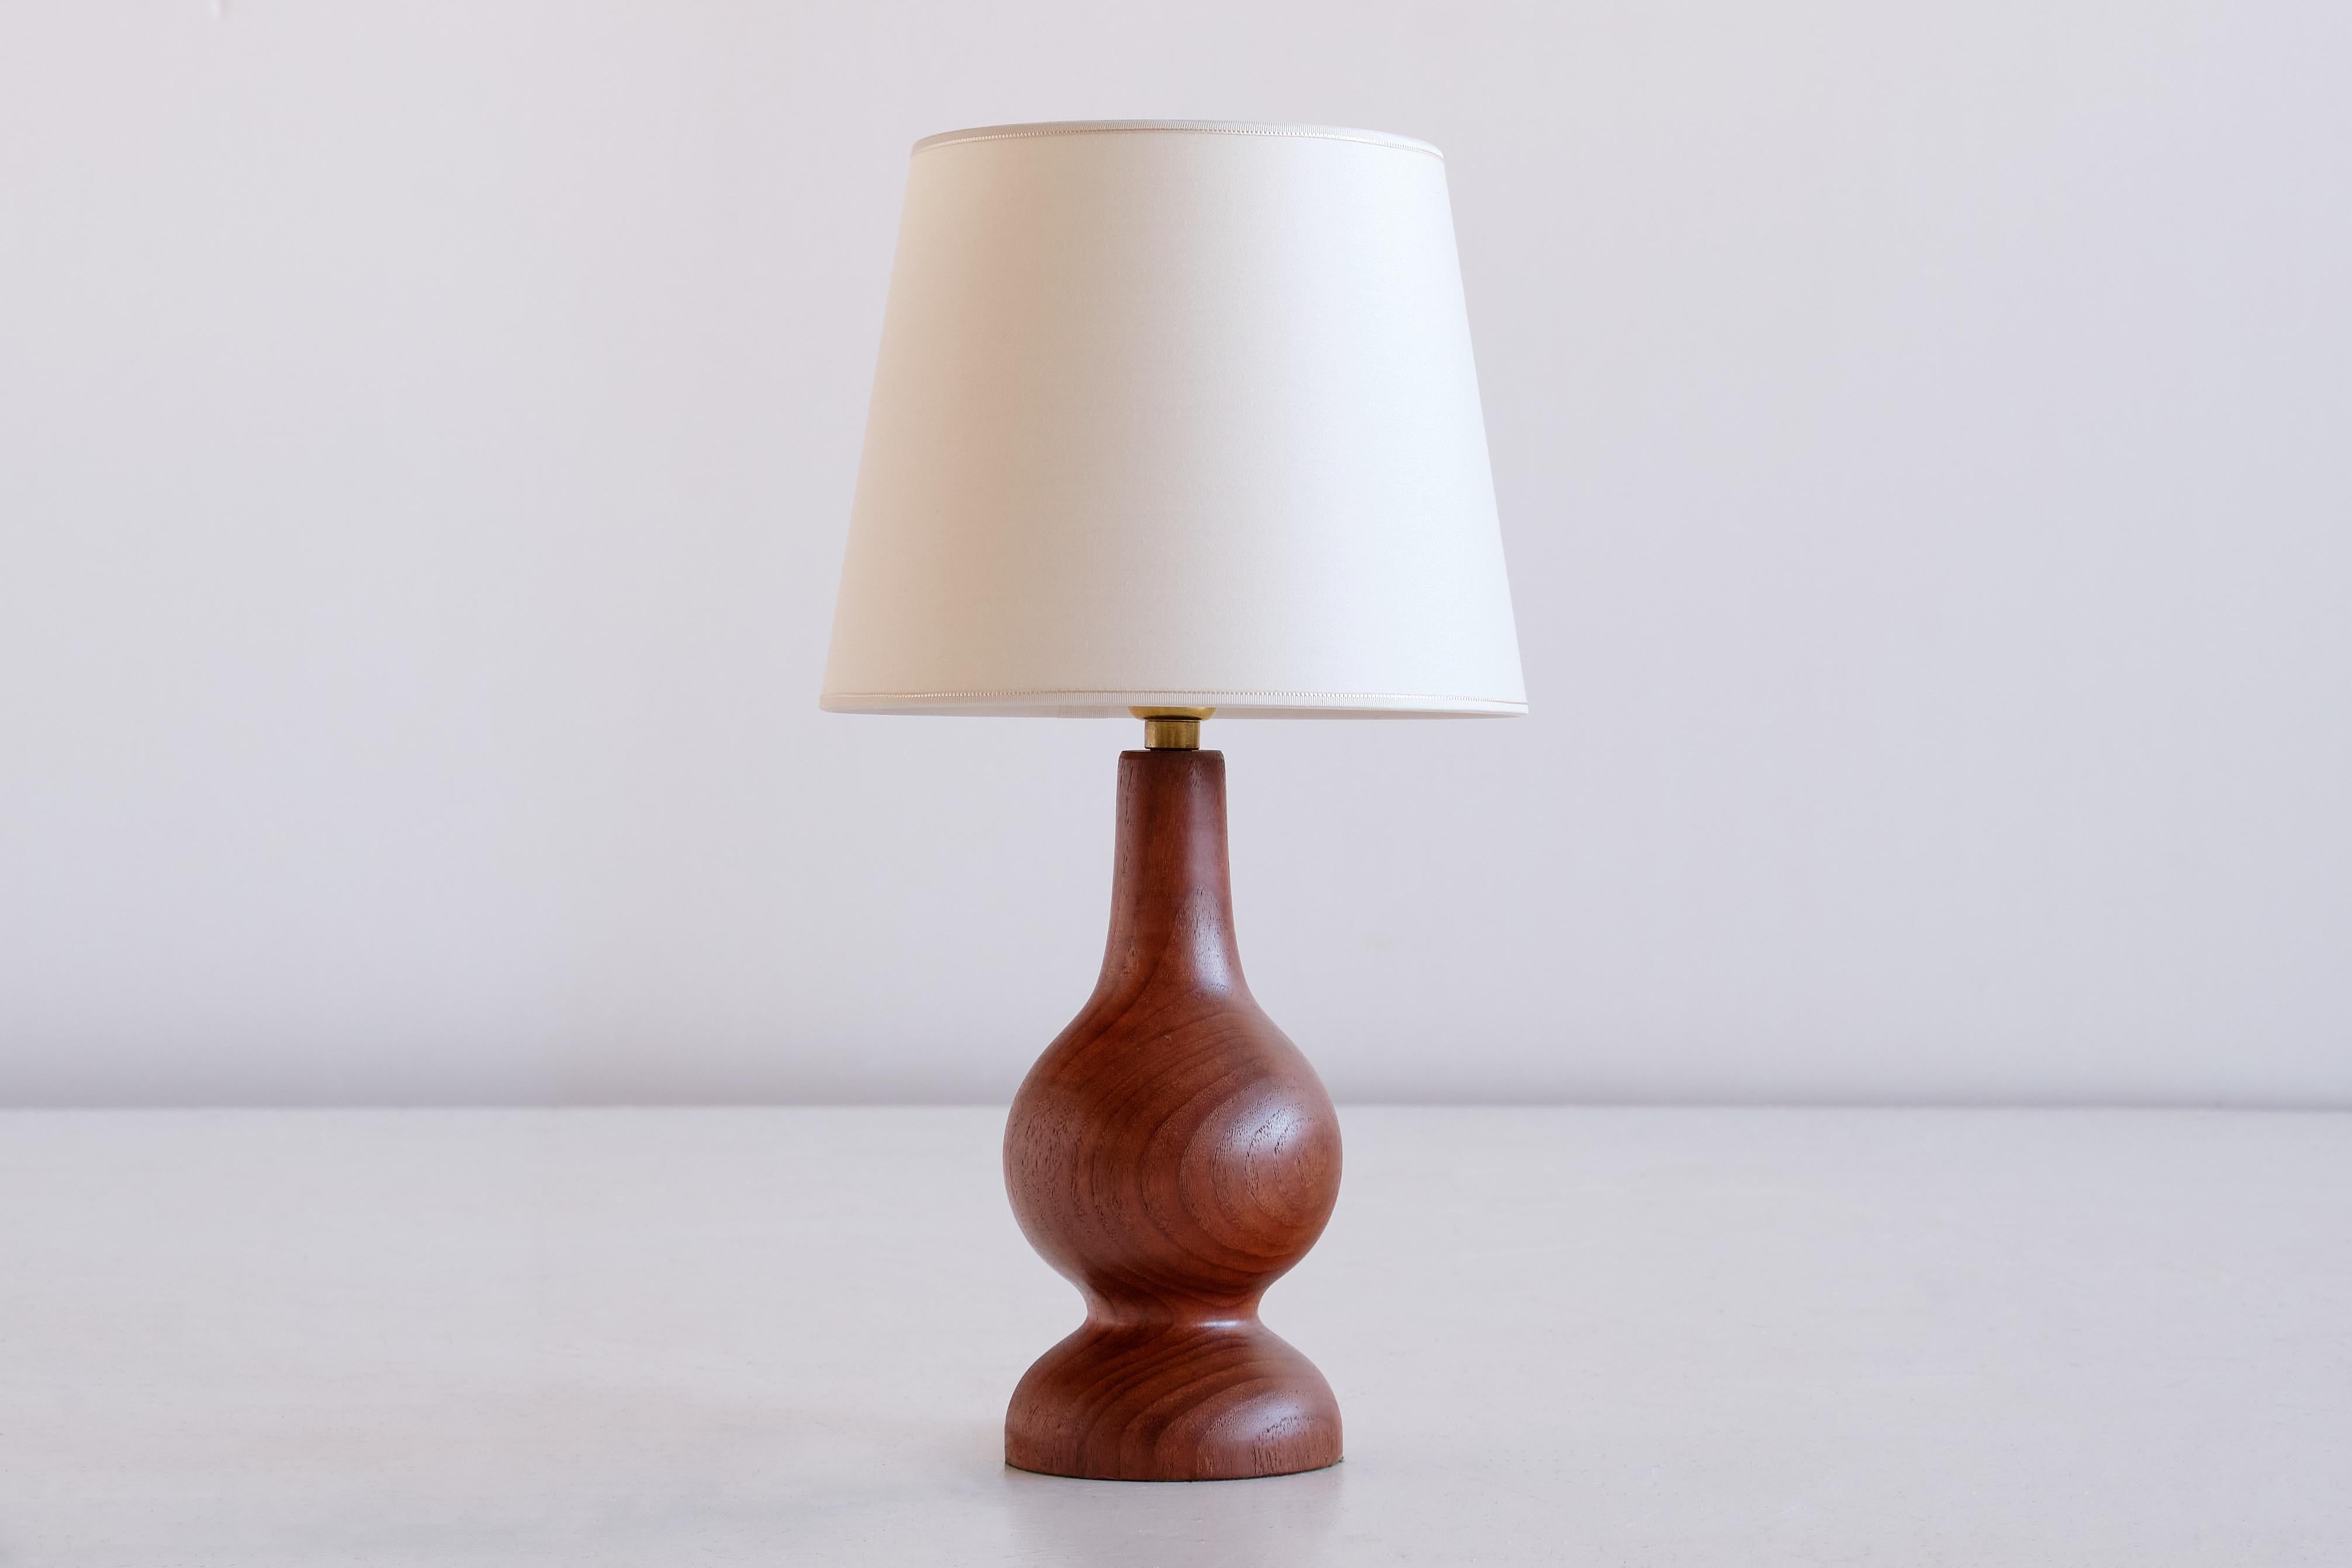 Cette lampe de table étonnante a été produite au Danemark dans les années 1960. Corps de lampe organique sculptural en bois de teck massif. Le nouvel abat-jour tambour effilé a été fabriqué sur mesure dans un tissu mat ivoire.

Recâblé, nouveau